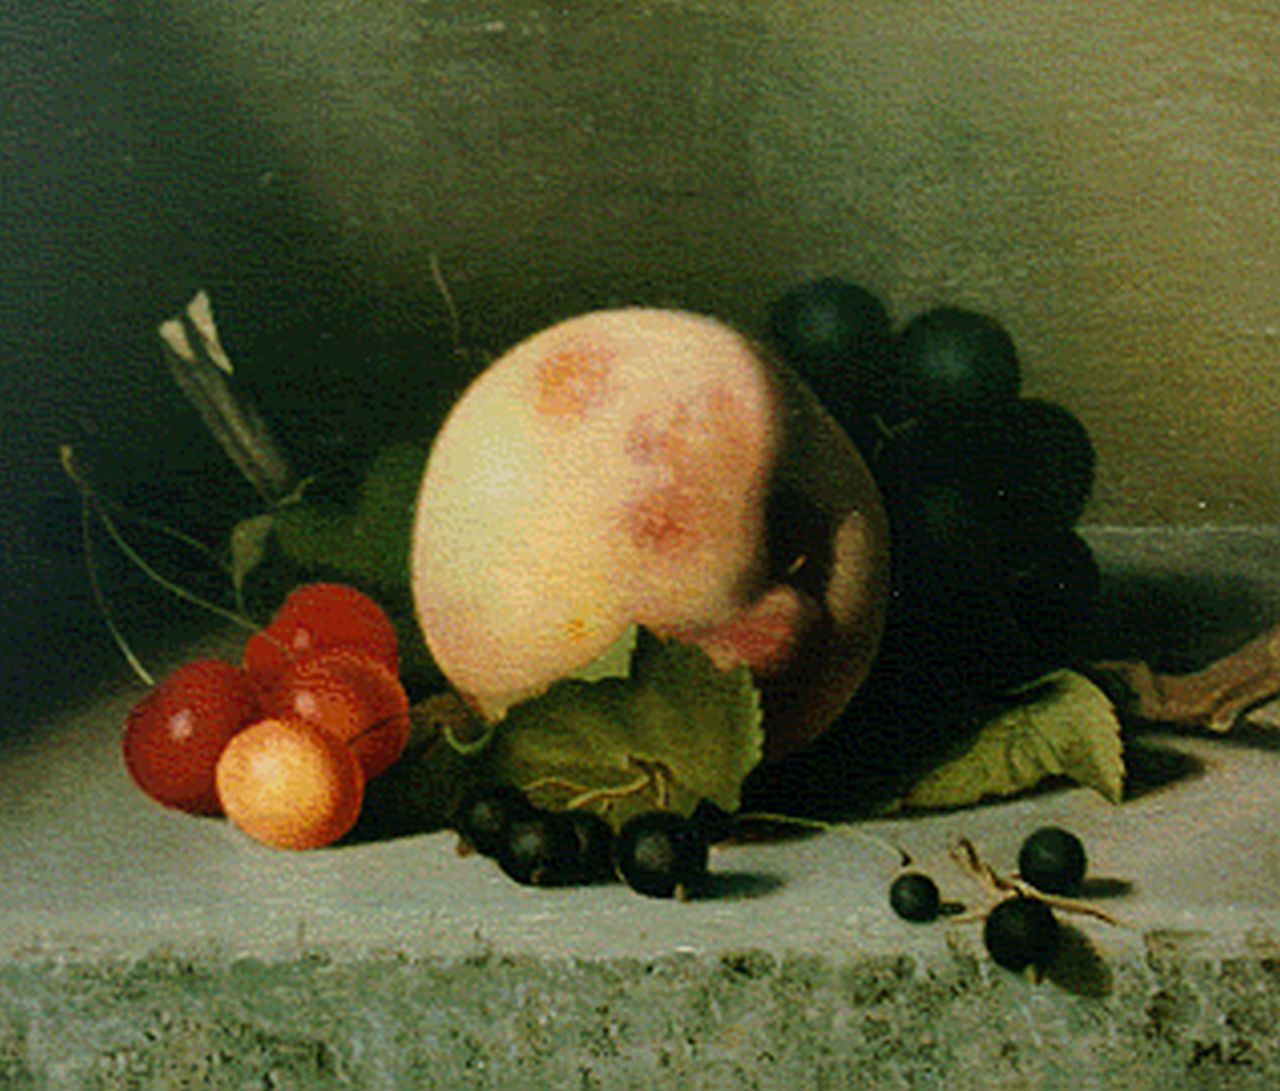 Hynckes-Zahn M.  | Marguerite Hynckes-Zahn, A still life with cherries, grapes and a peach, 21.1 x 25.0 cm, signed l.r. with initials